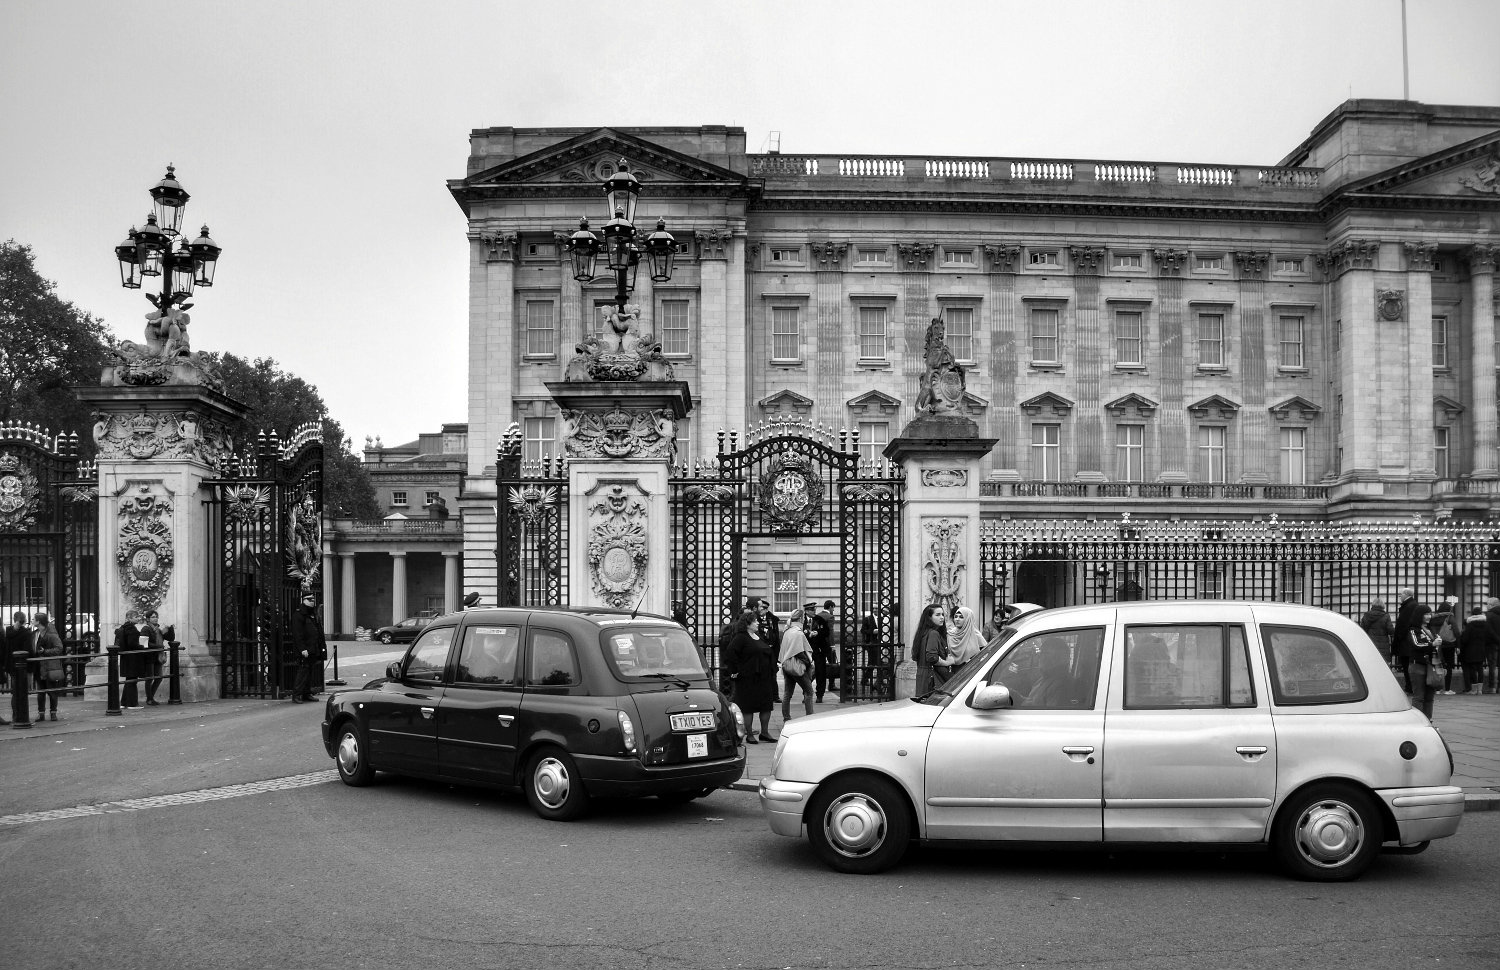 Ingresso a Buckingham Palace...